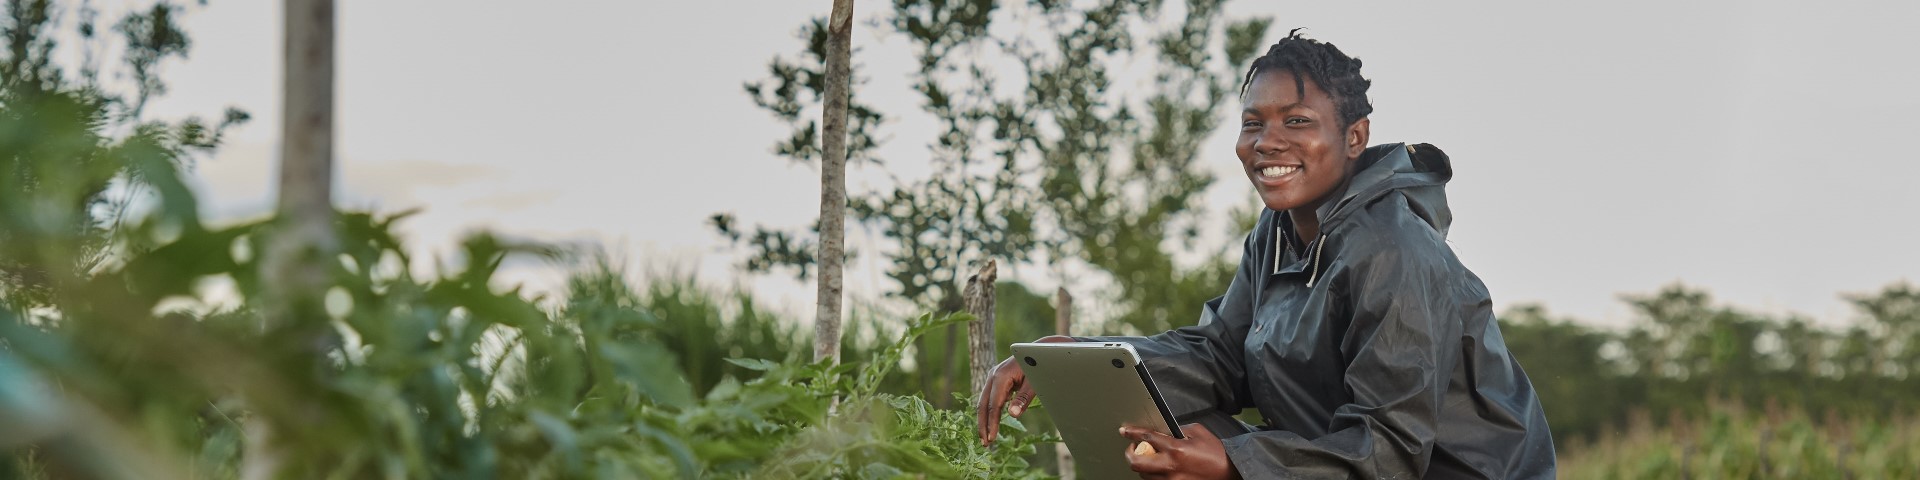 Eine Person hockt in einem Feld und schaut auf ein Tablet.